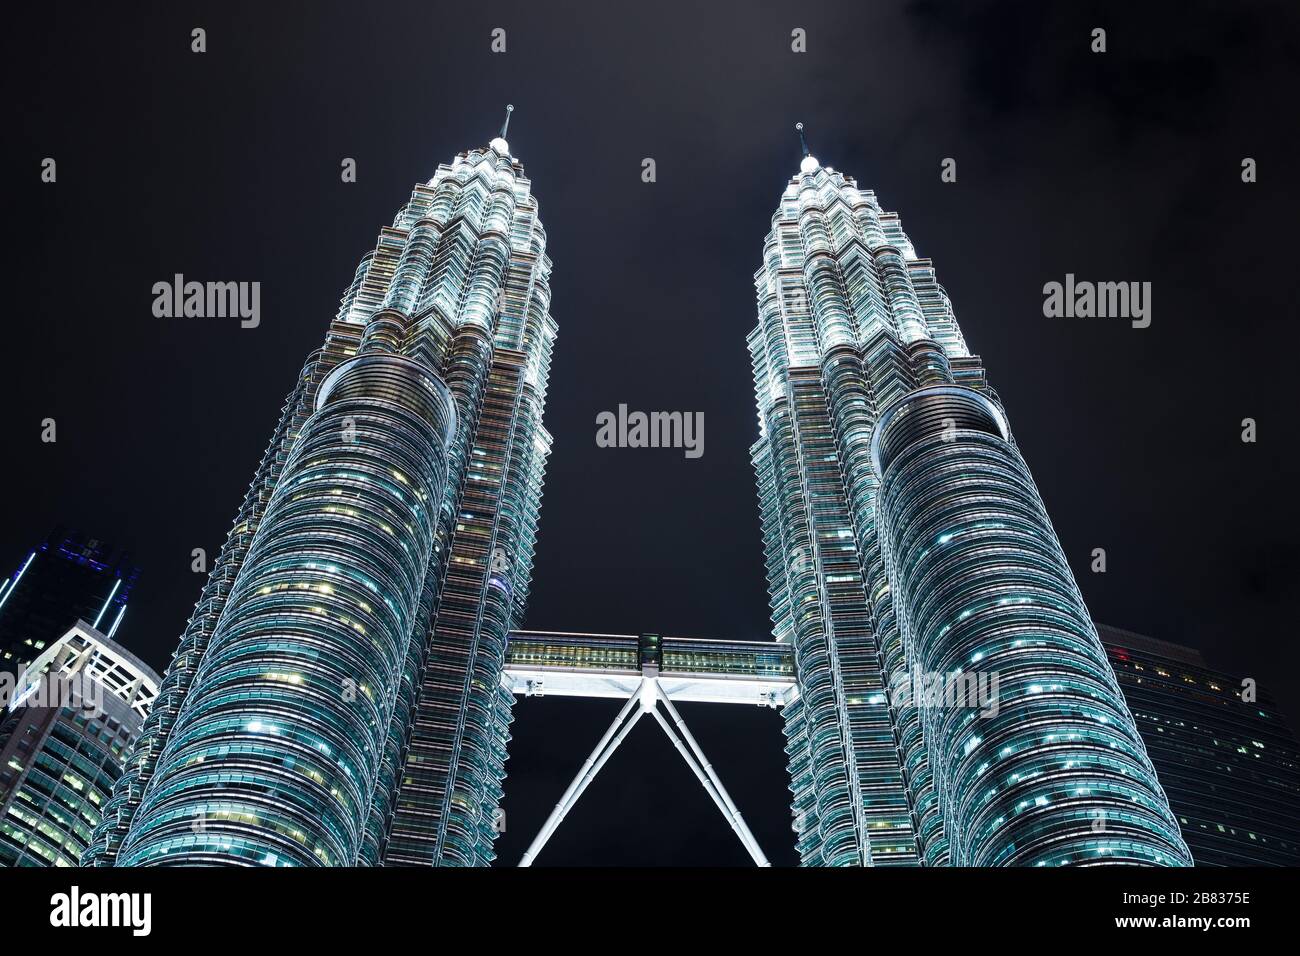 Kuala Lumpur, Malaisie - 28 novembre 2019 : extérieur des tours jumelles Petronas avec éclairage de nuit, vue perspective Banque D'Images